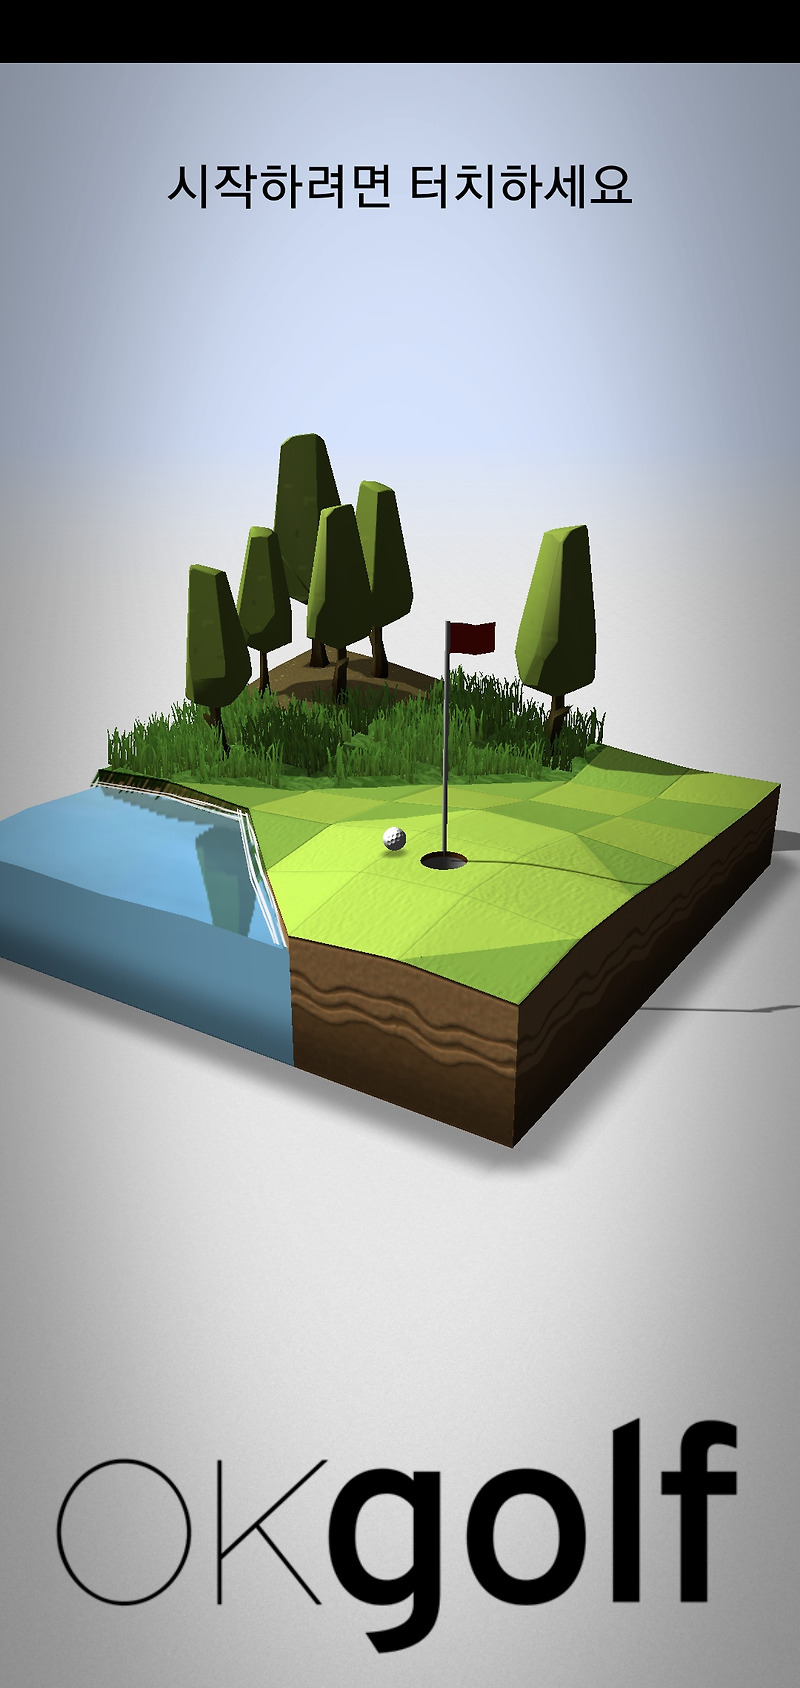 간단한 골프 게임, Okgolf